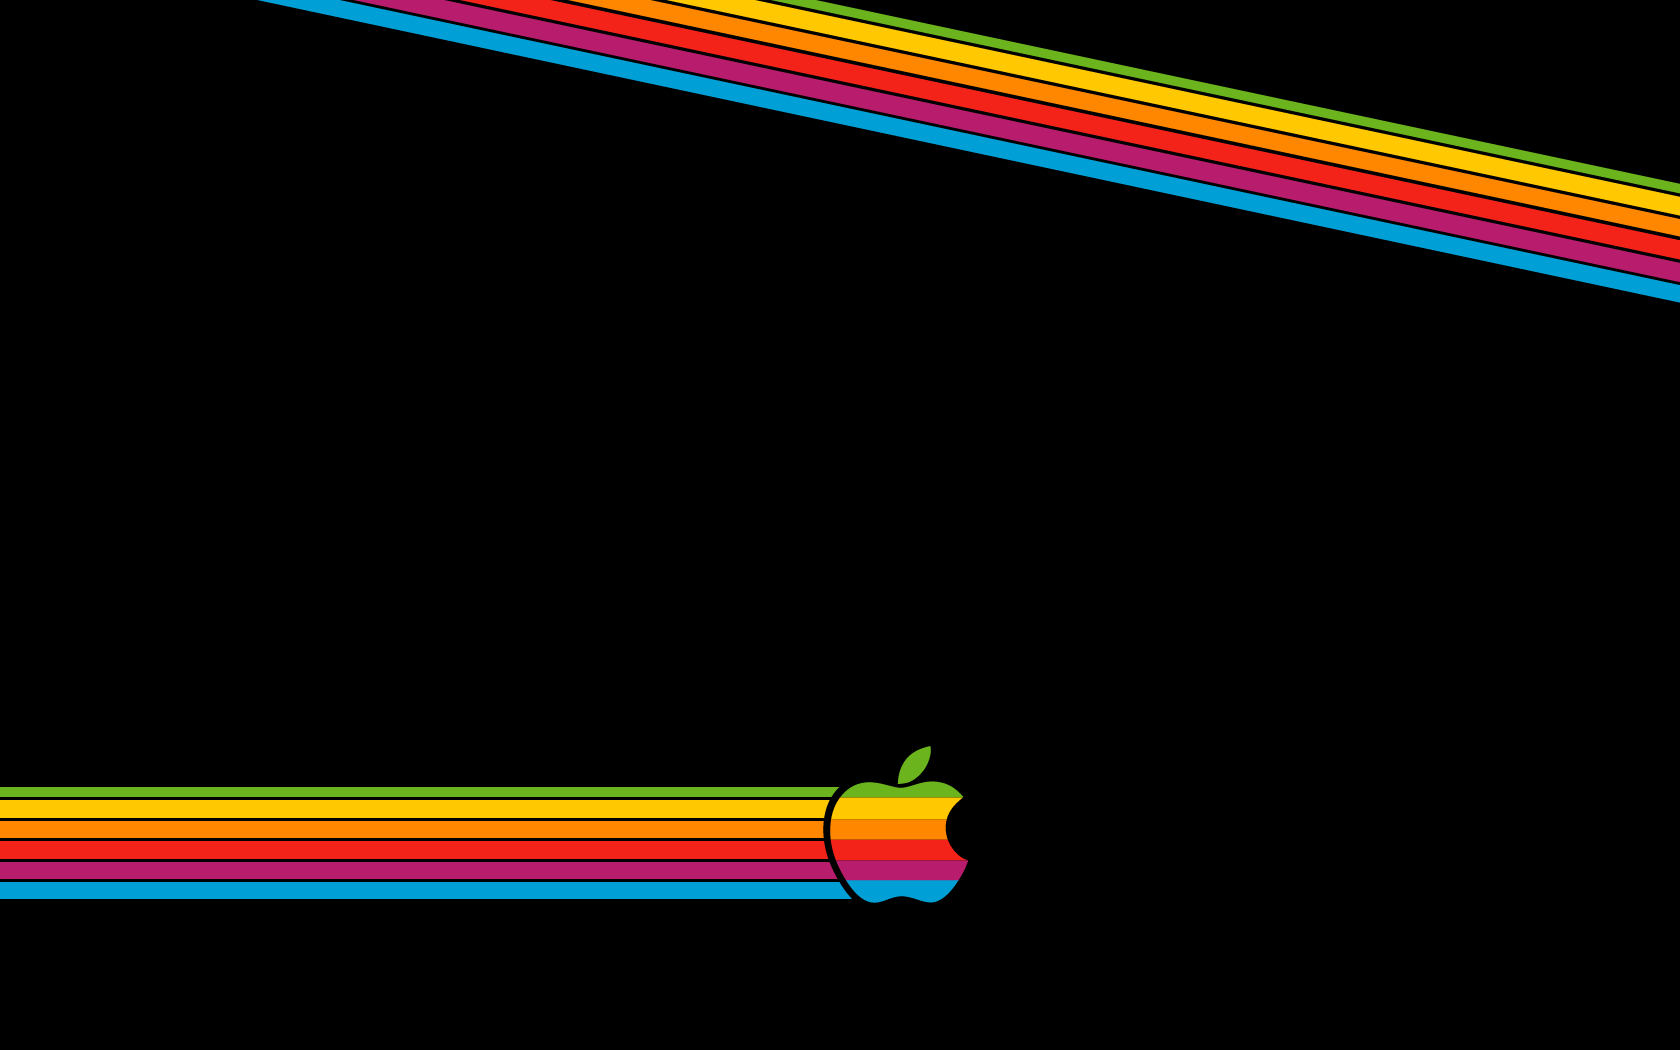 Retro Apple Logo Wallpaper Free Retro Apple Logo